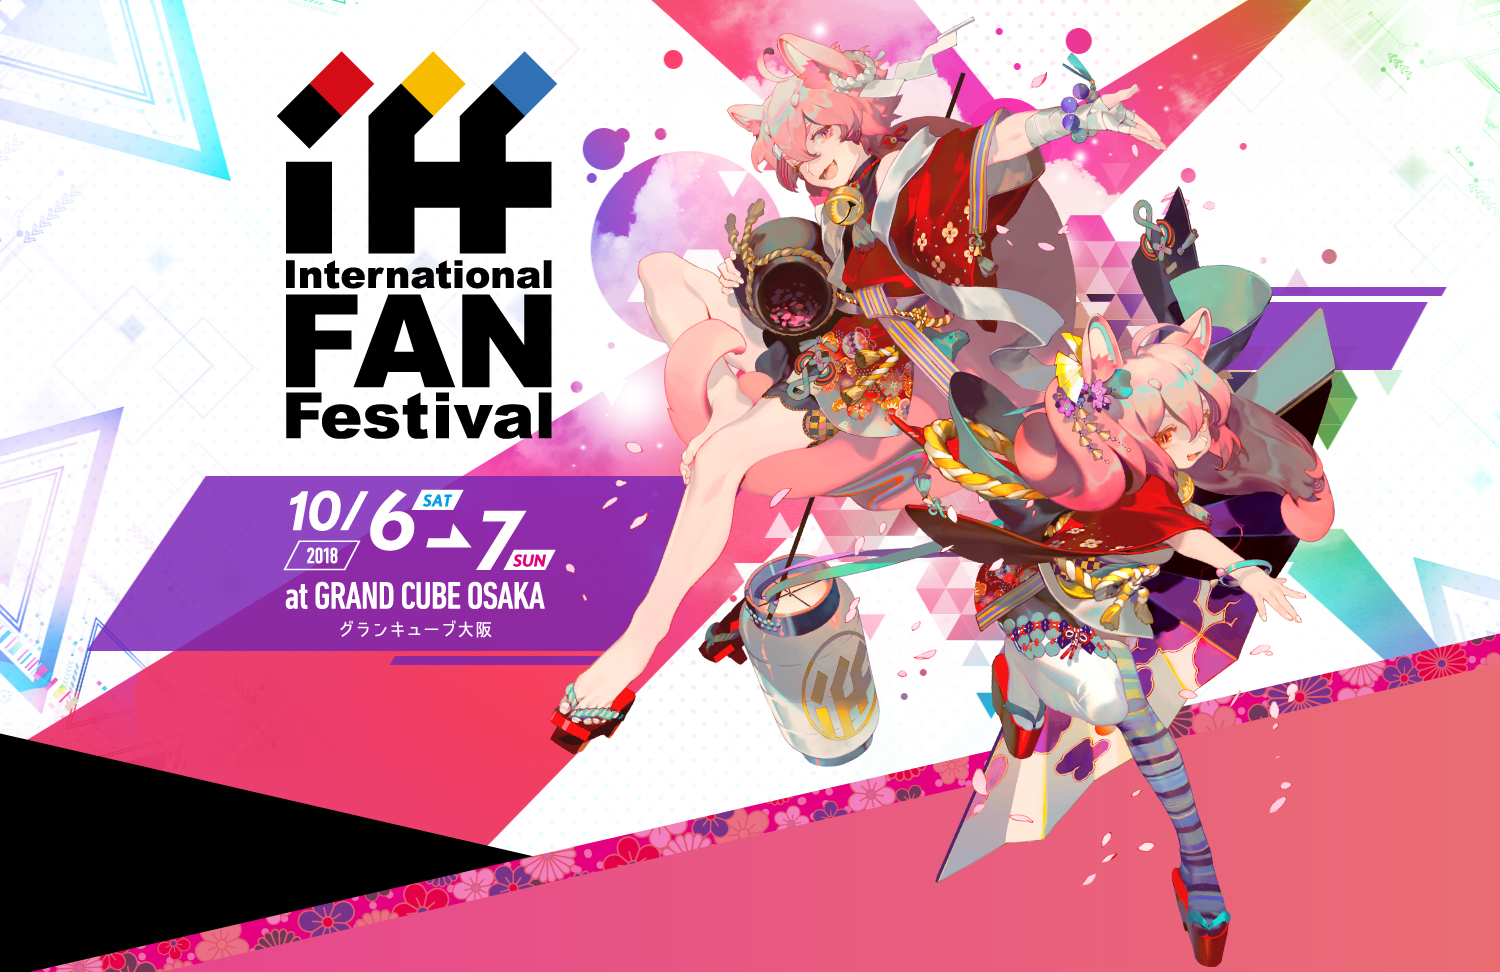 逆輸入型ジャパンアニメイベント International Fan Festival Osaka 18 フォトセッションやサイン会も Spice エンタメ特化型情報メディア スパイス